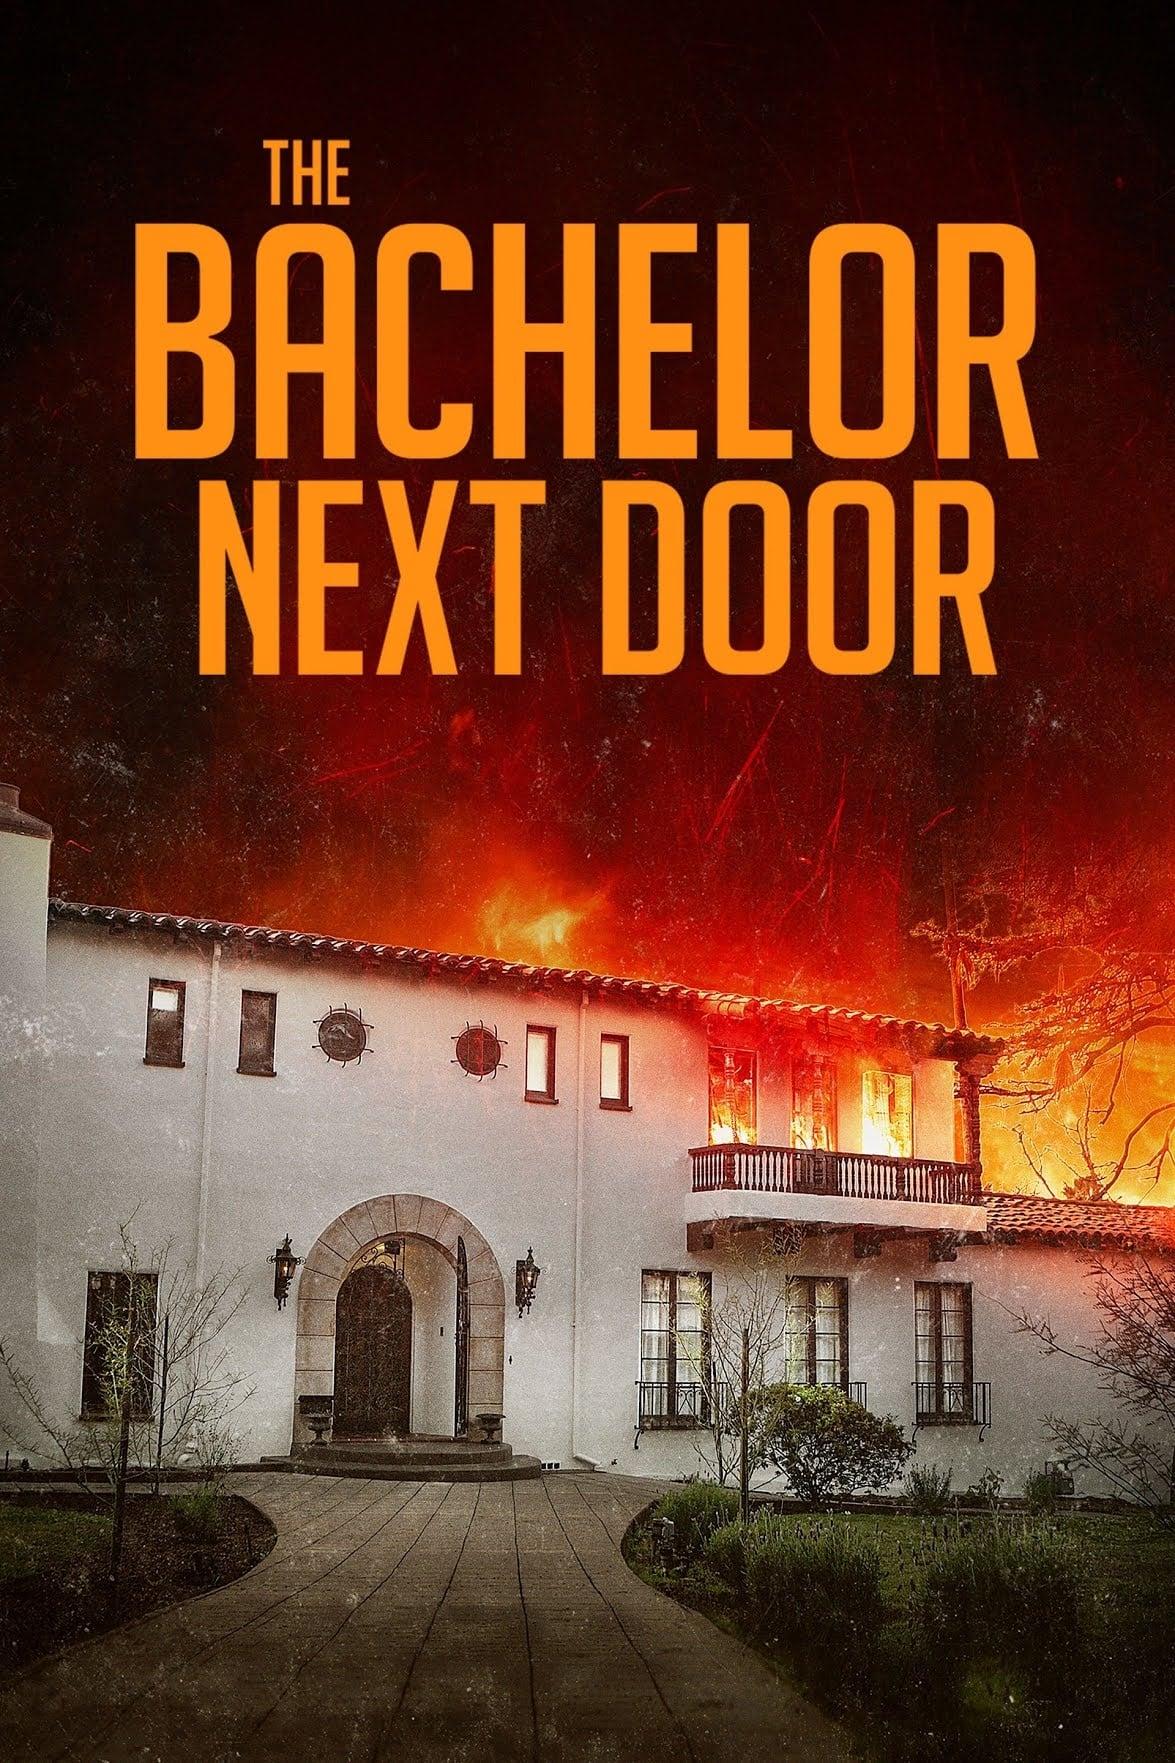 The Bachelor Next Door poster